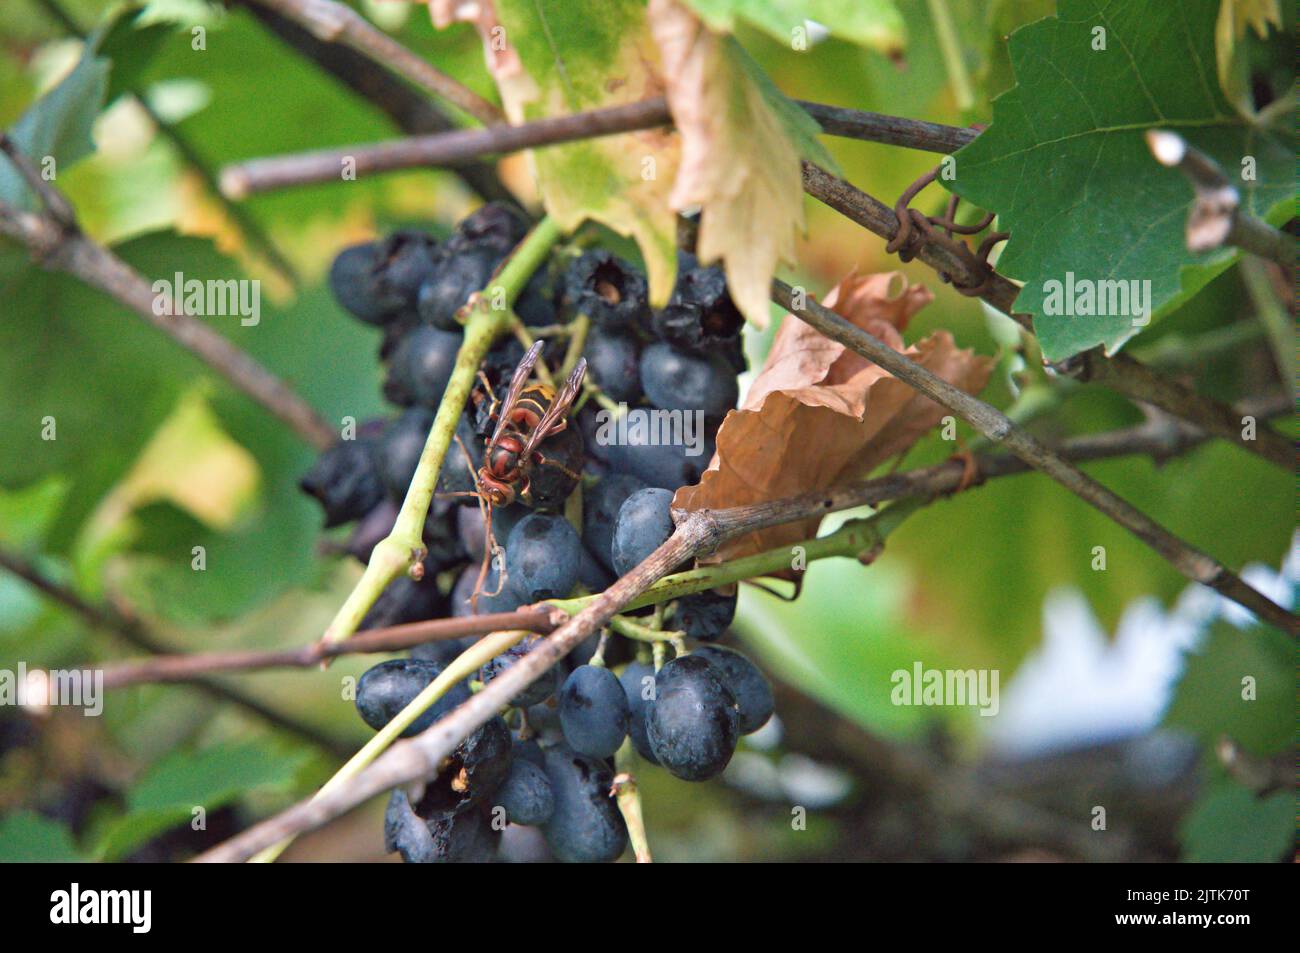 Busy hornet on grape in summertime Stock Photo